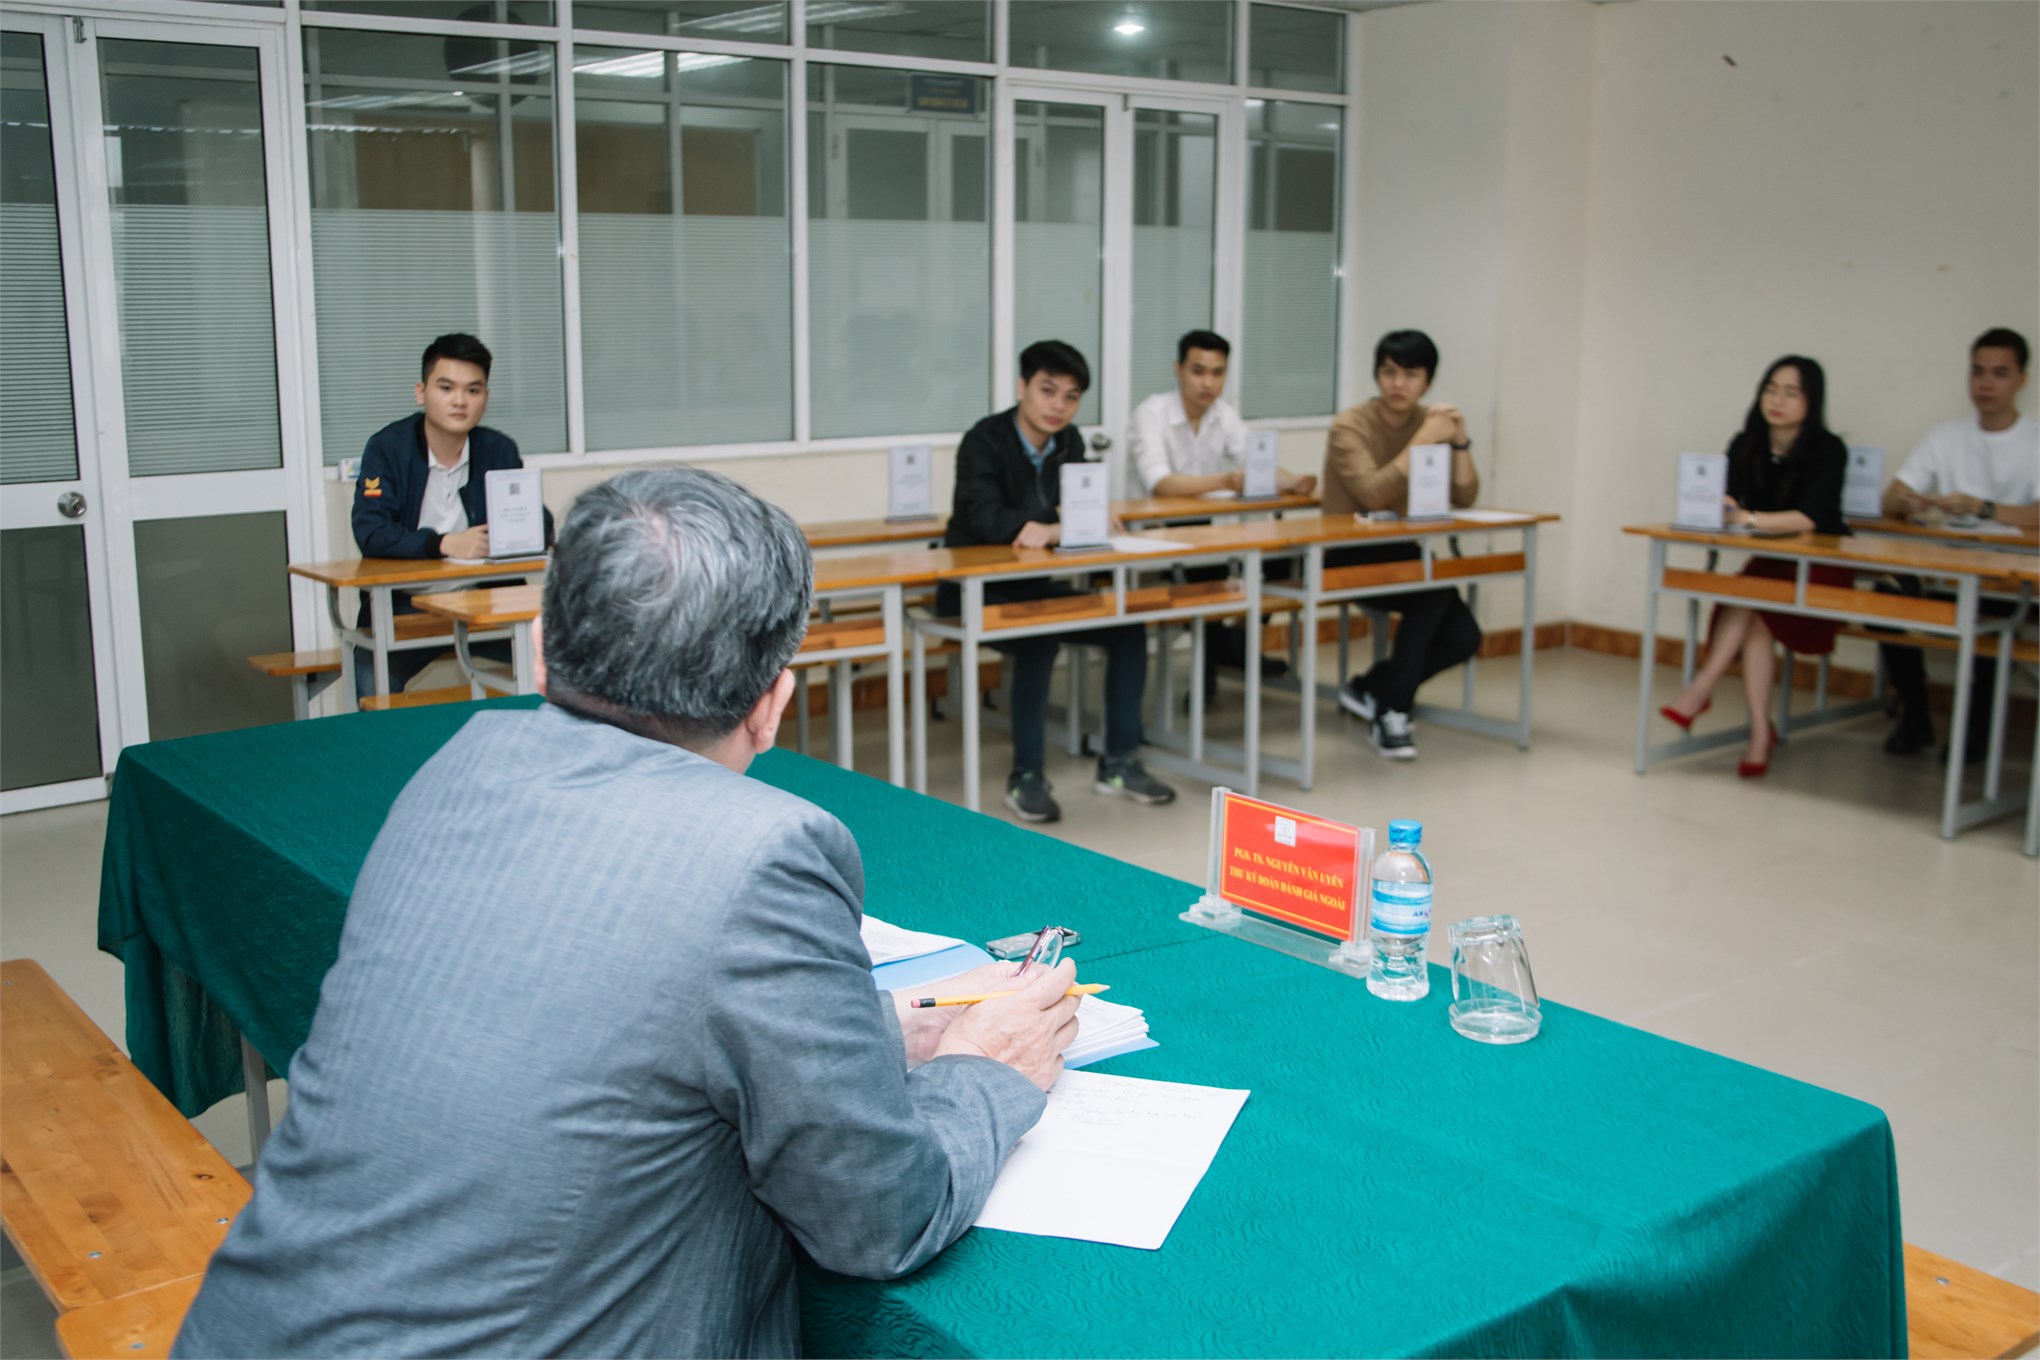 Đoàn chuyên gia đánh giá ngoài chương trình đào tạo đến khảo sát tại Khoa Ngoại ngữ - Trường Đại học Công nghiệp Hà Nội